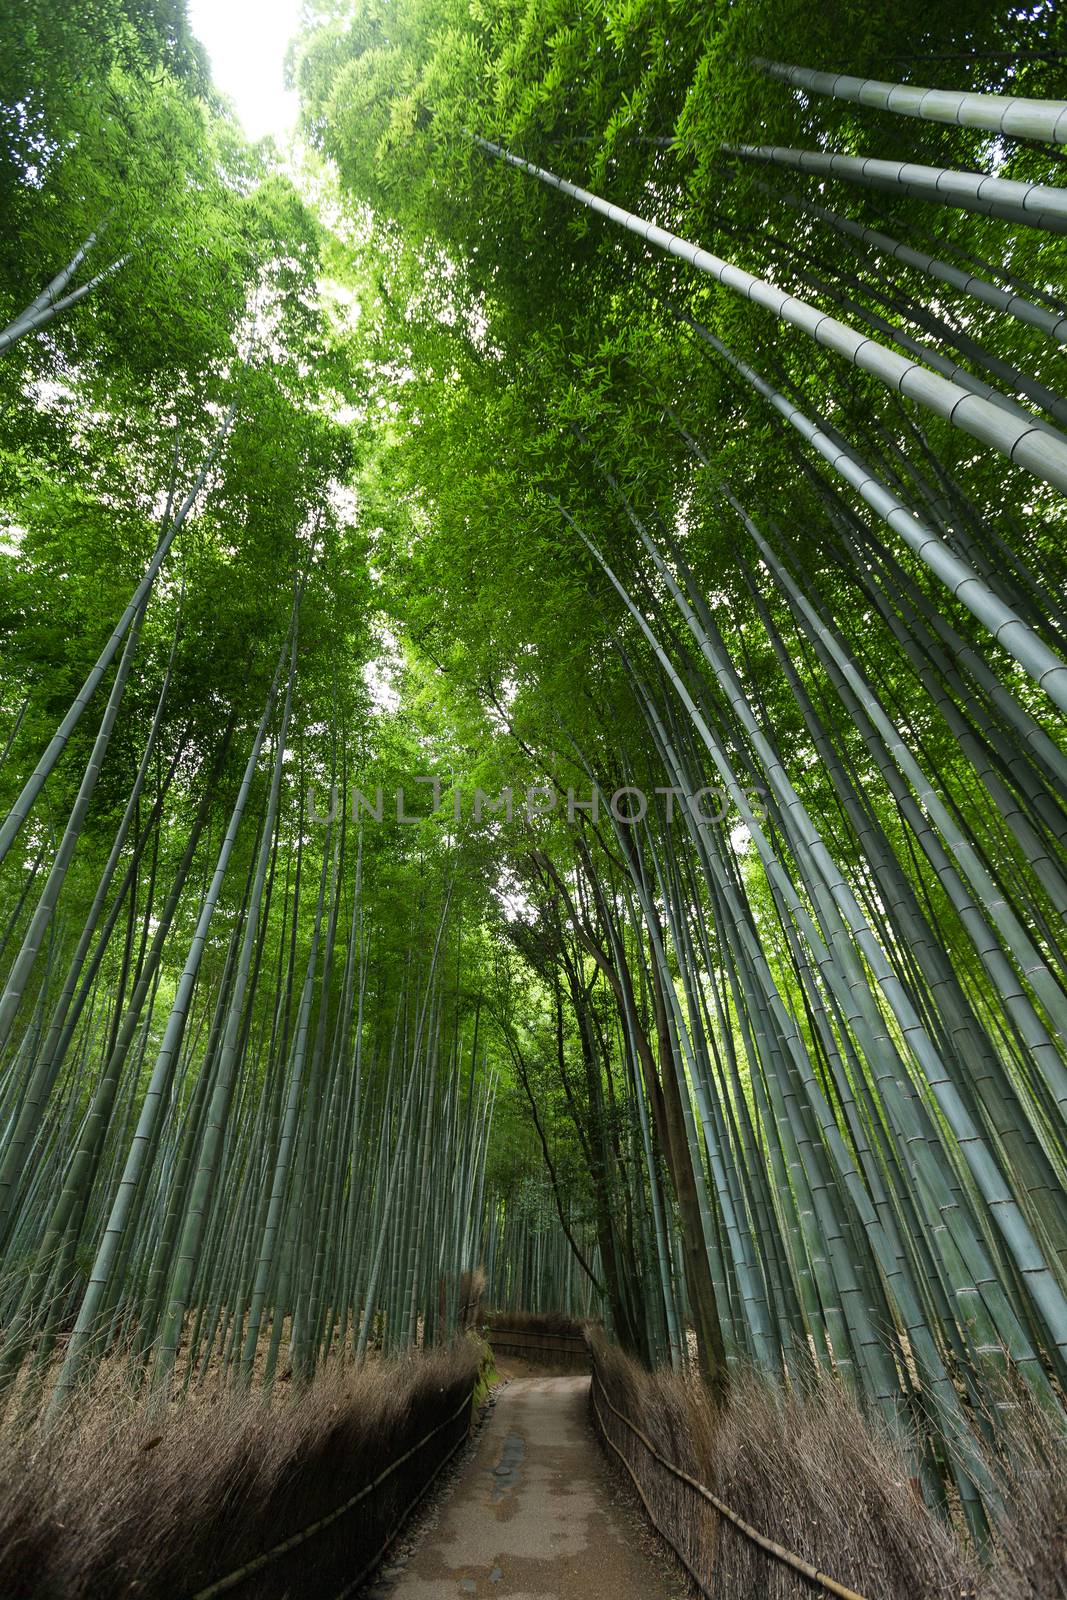 Bamboo forest at Arashiyama by leungchopan